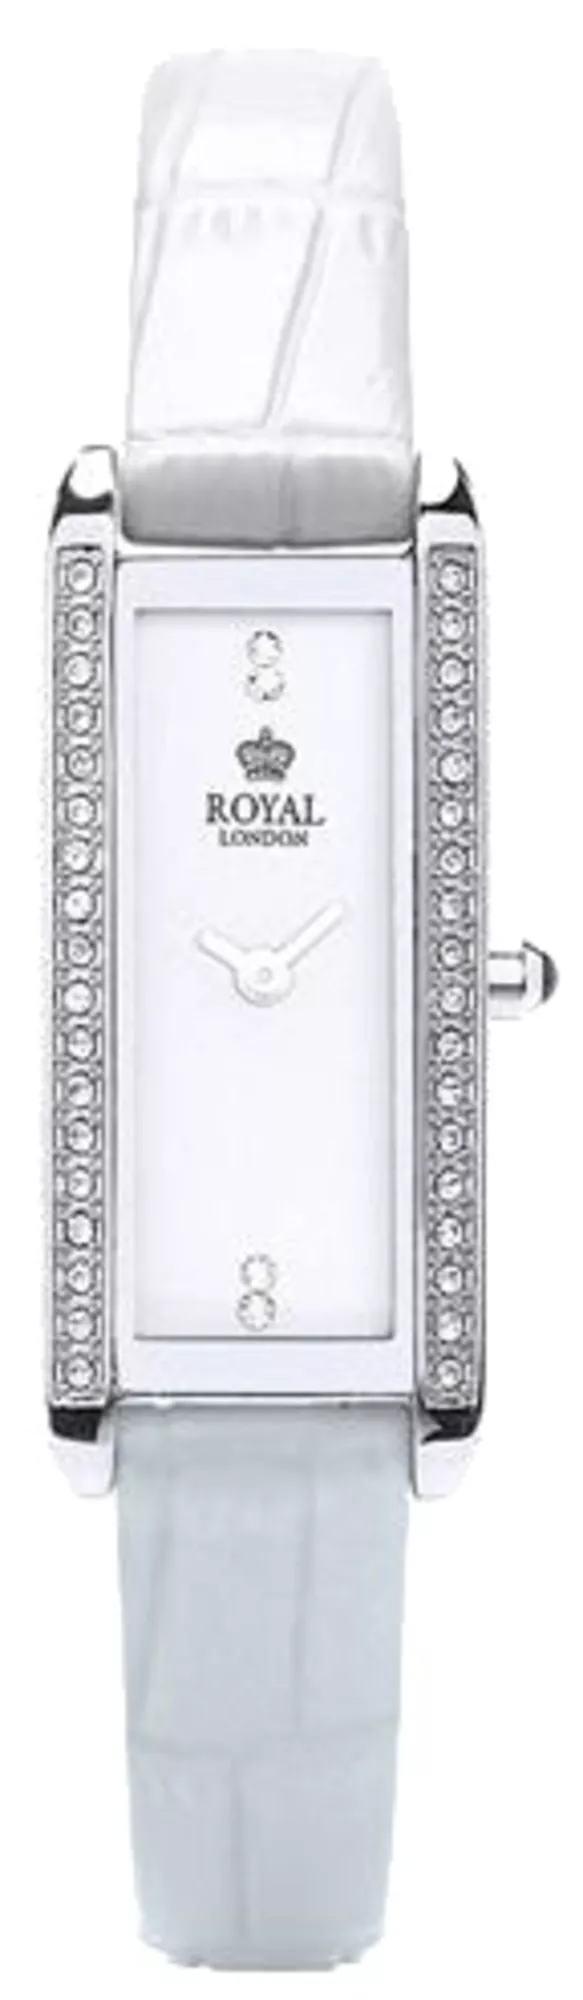 Часы Royal London 21246-03